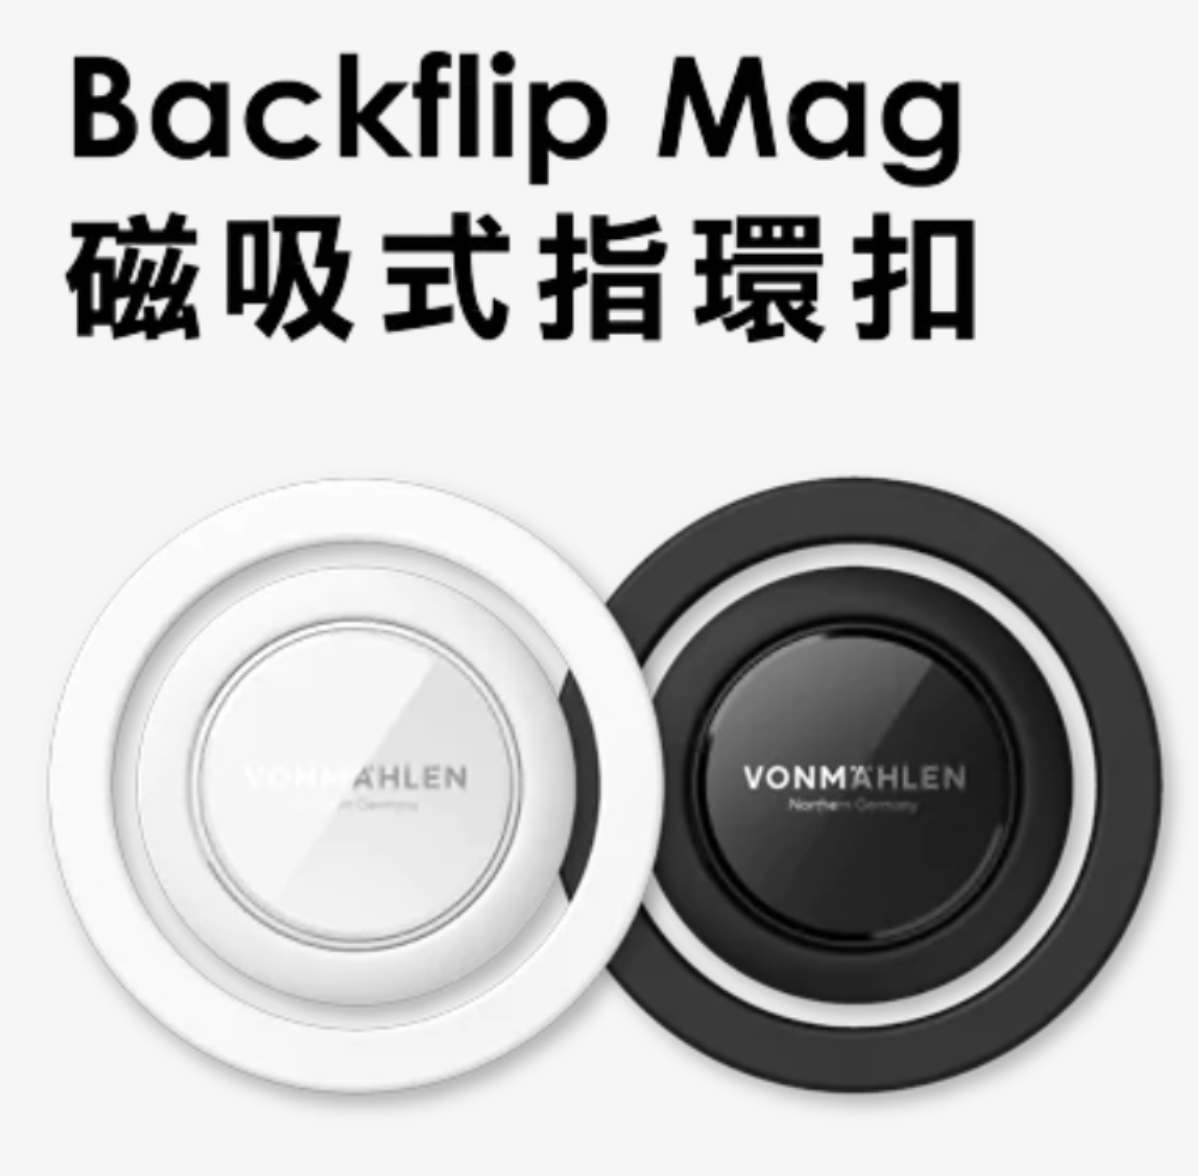 【 加購配件 】Backflip Mag 磁吸指環扣